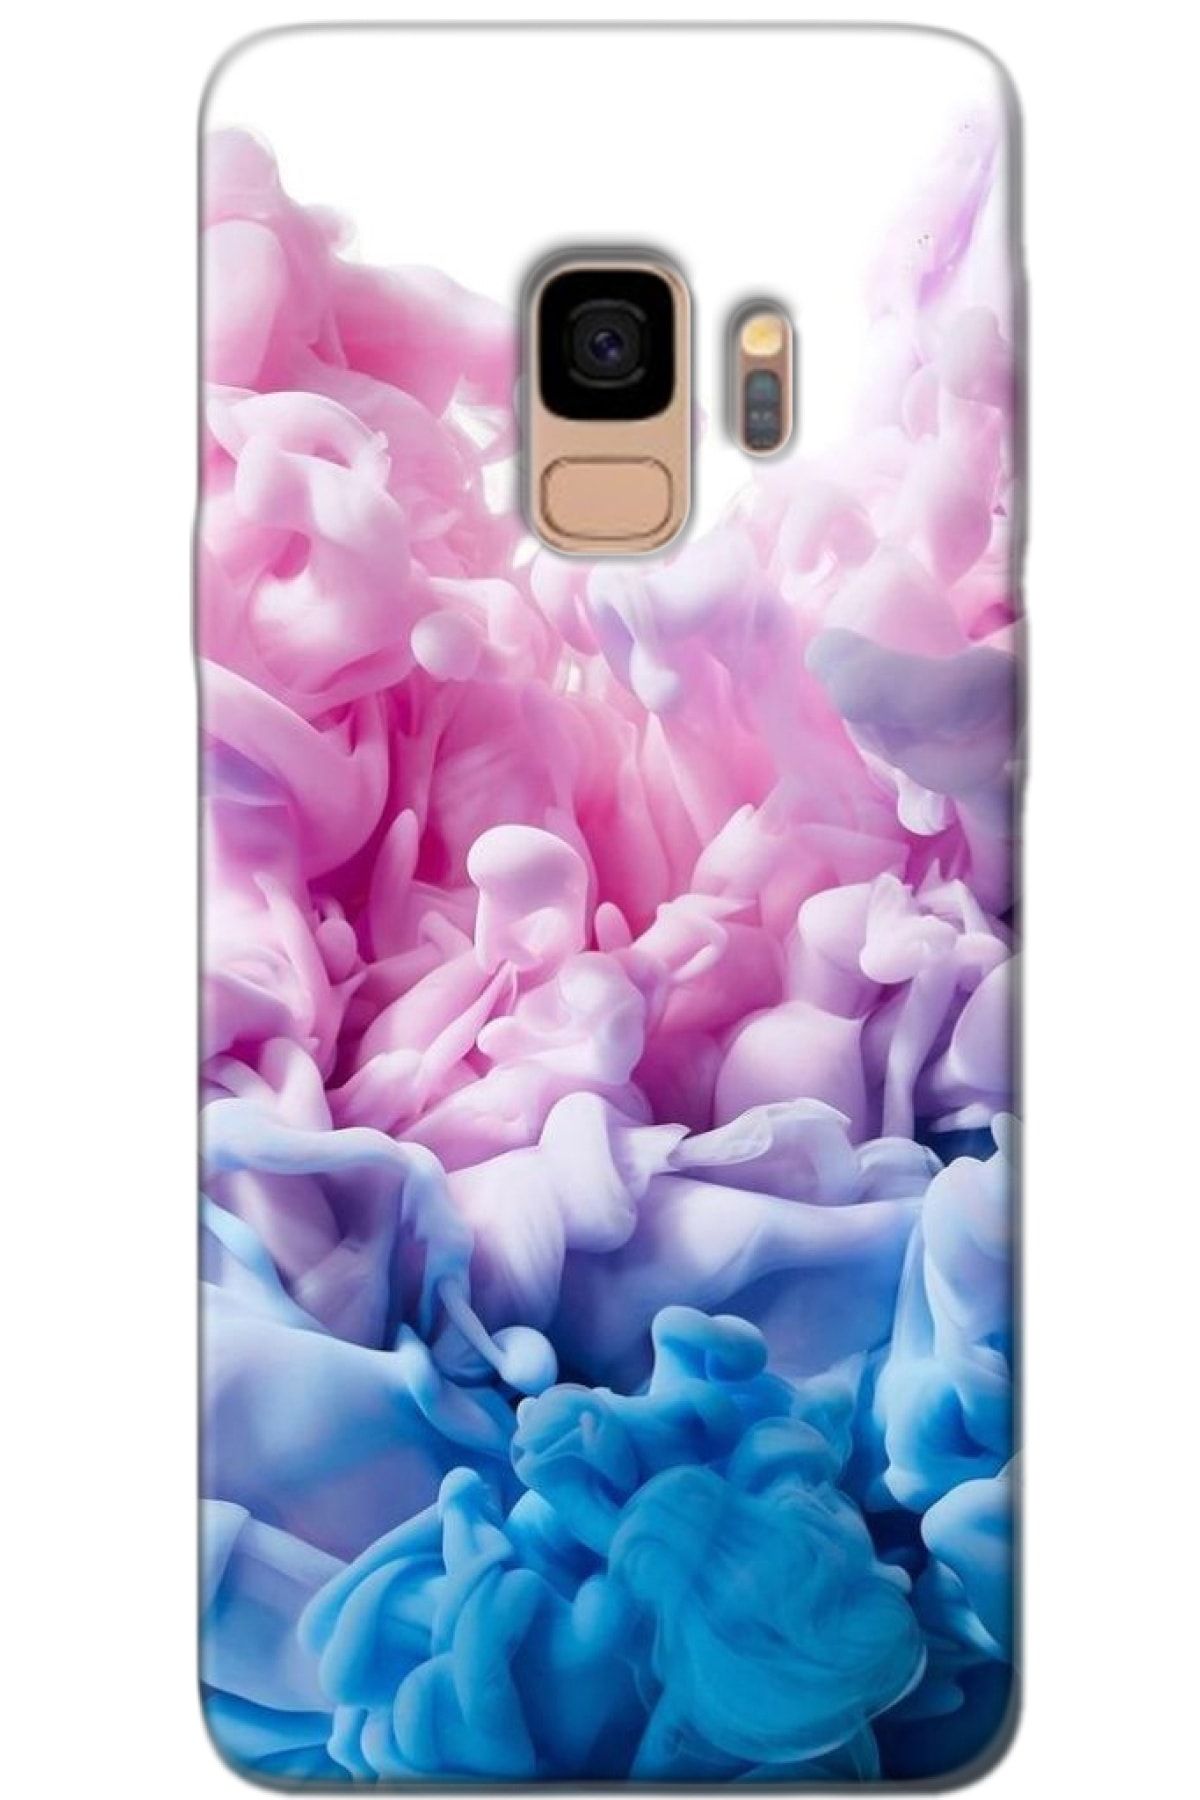 Noprin Samsung Galaxy S9 Kılıf Silikon Baskılı Desenli Arka Kapak